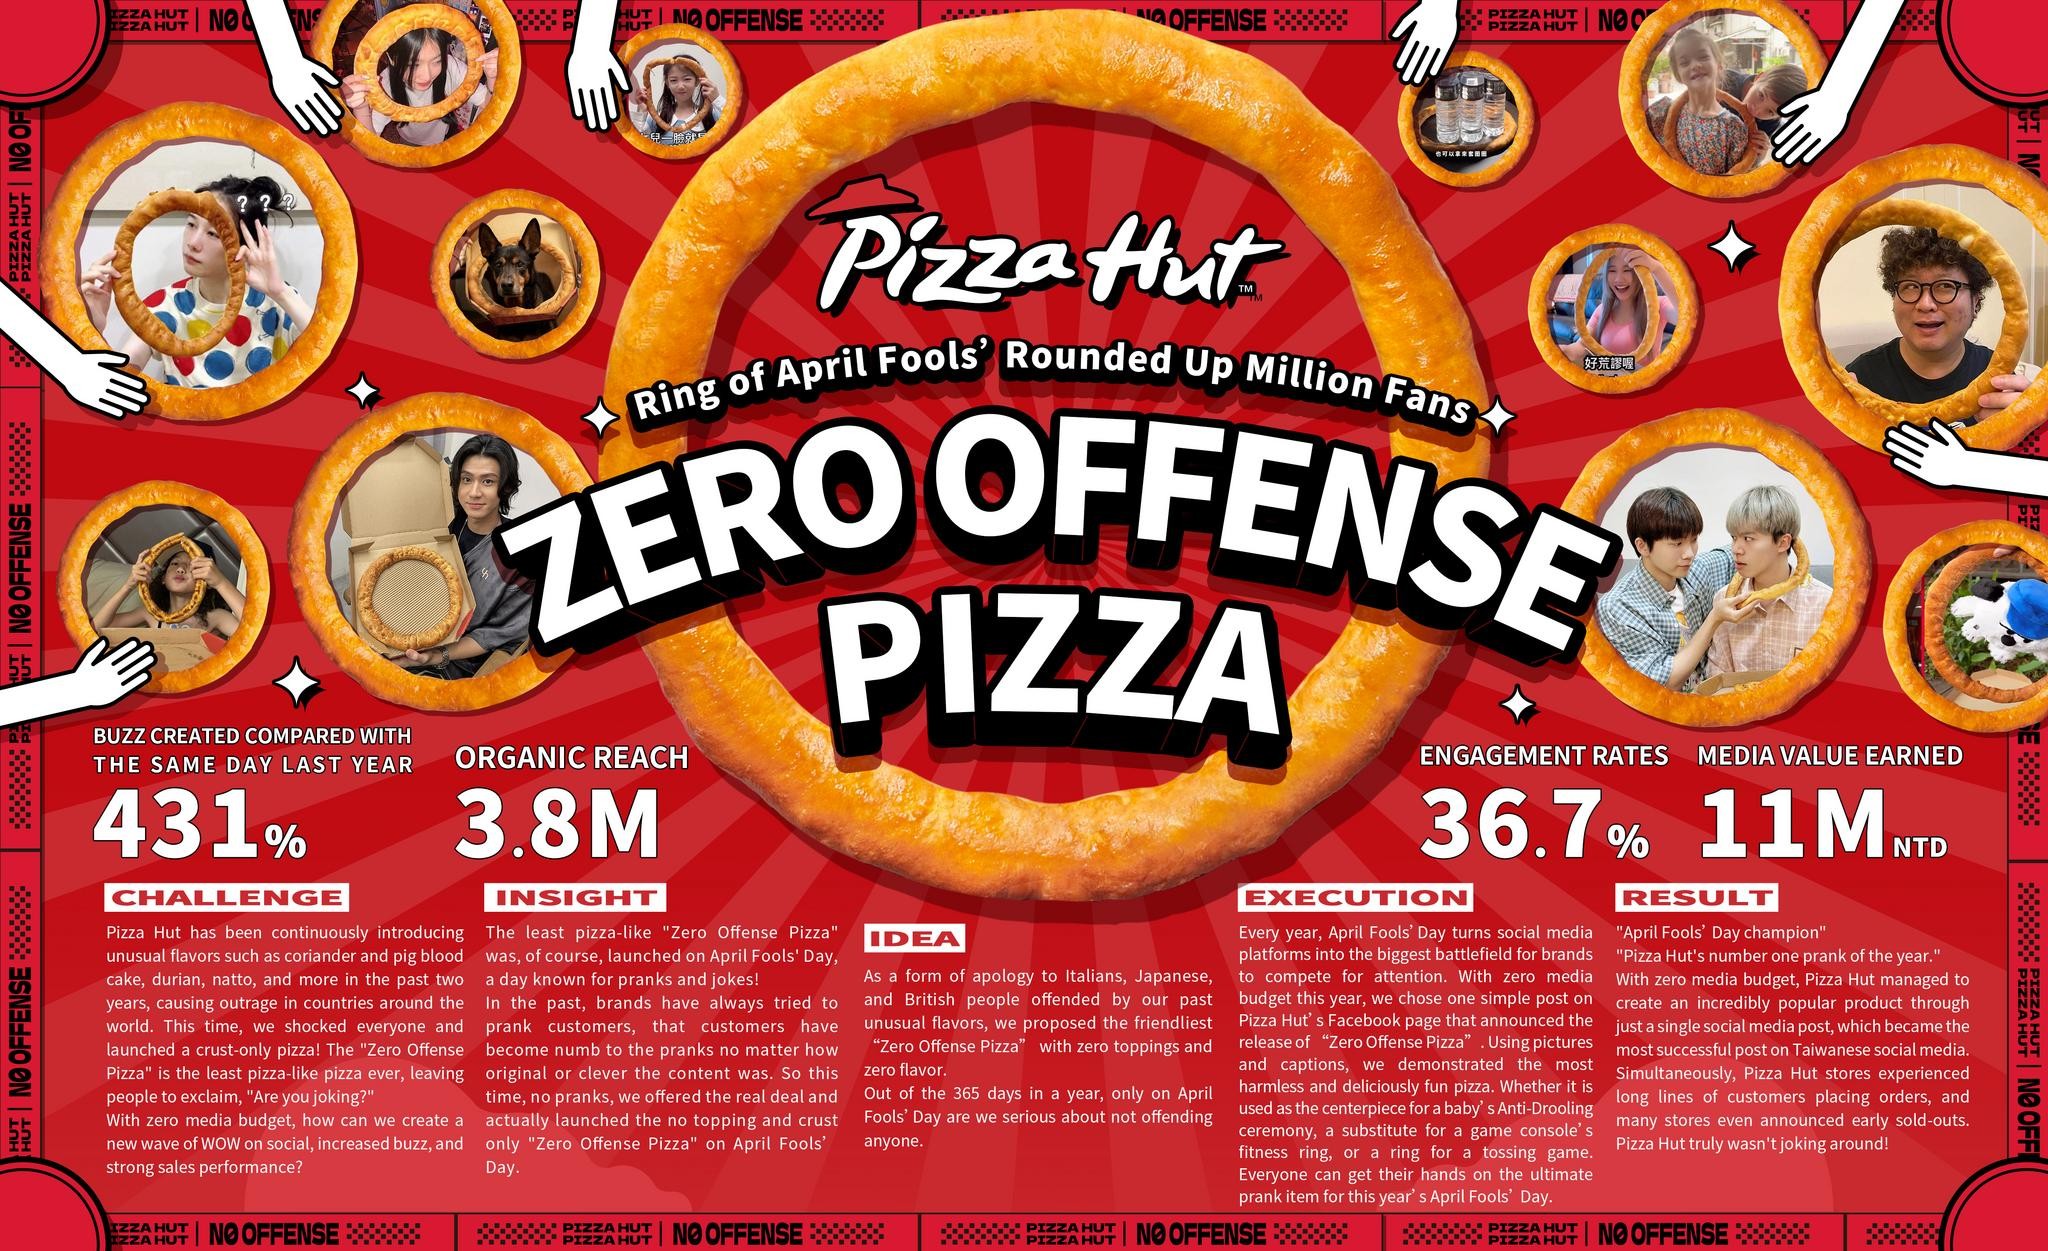 The Zero Offense Pizza